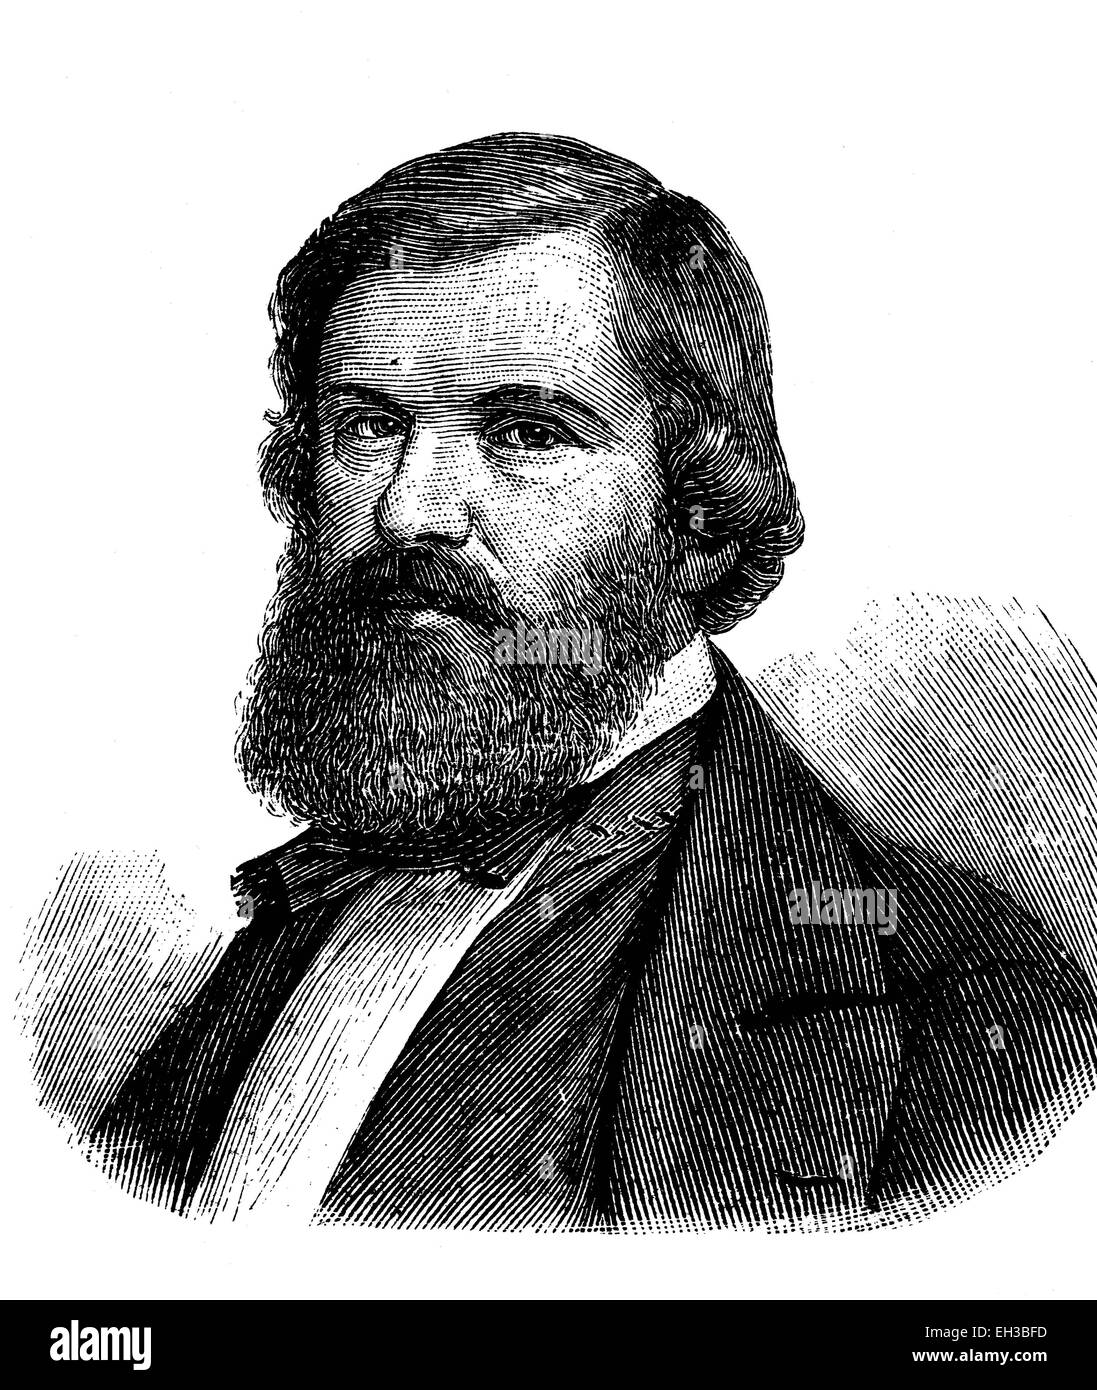 Hugo Maximilian Wesendonck, 1817 - 1900, un entrepreneur et homme politique allemand, gravure sur bois, vers 1880 Banque D'Images